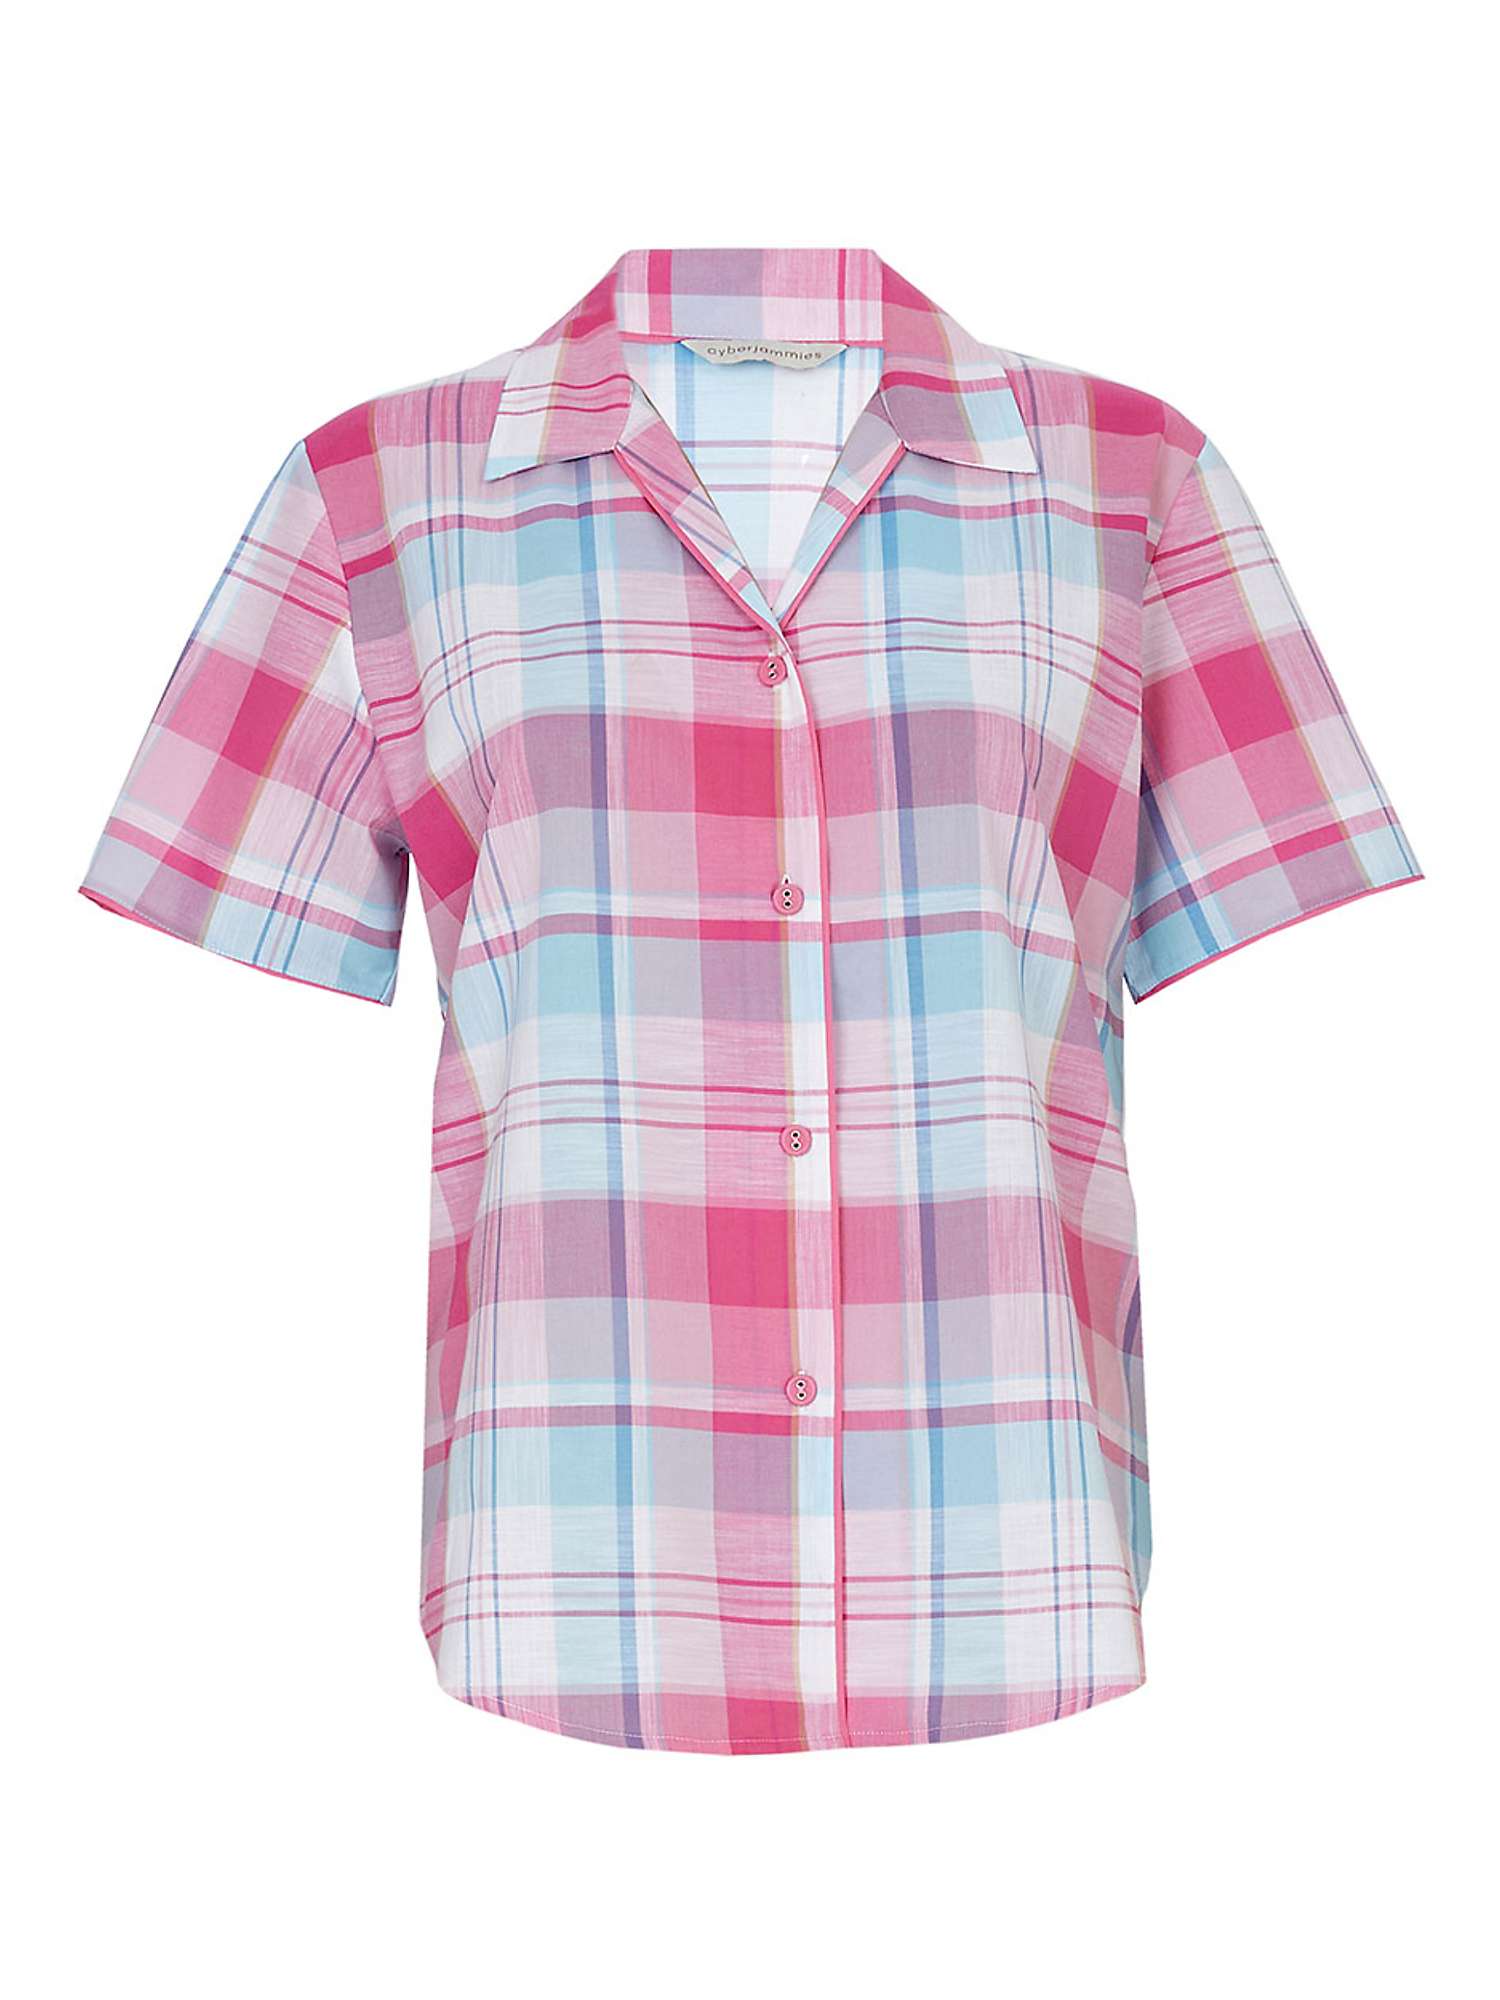 Buy Cyberjammies Shelly Check Short Sleeve Pyjama Top, Pink Online at johnlewis.com